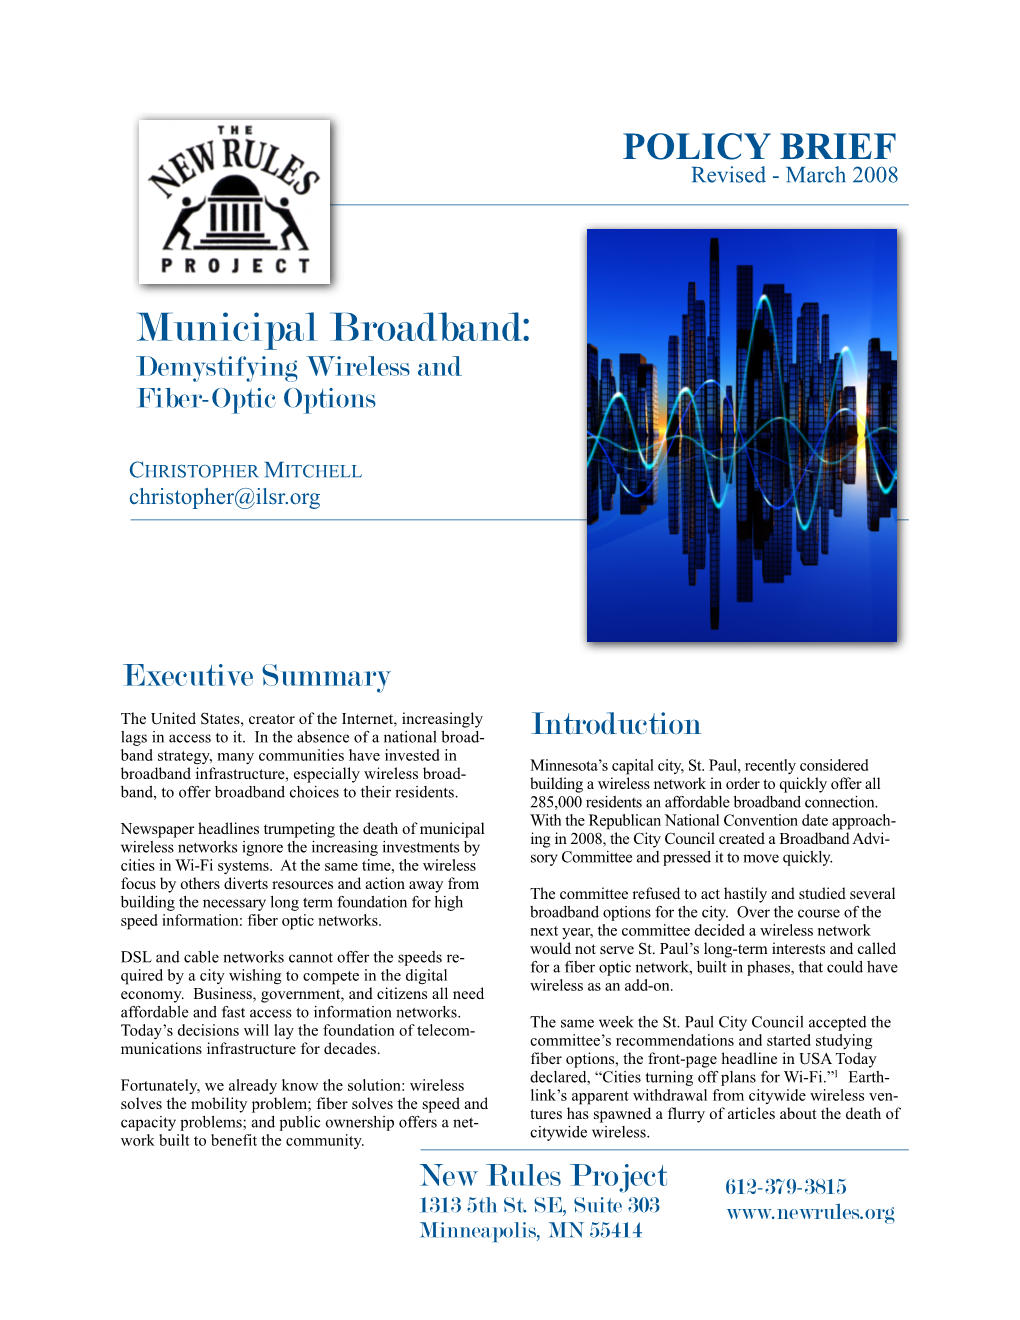 Municipal Broadband: Demystifying Wireless and Fiber-Optic Options